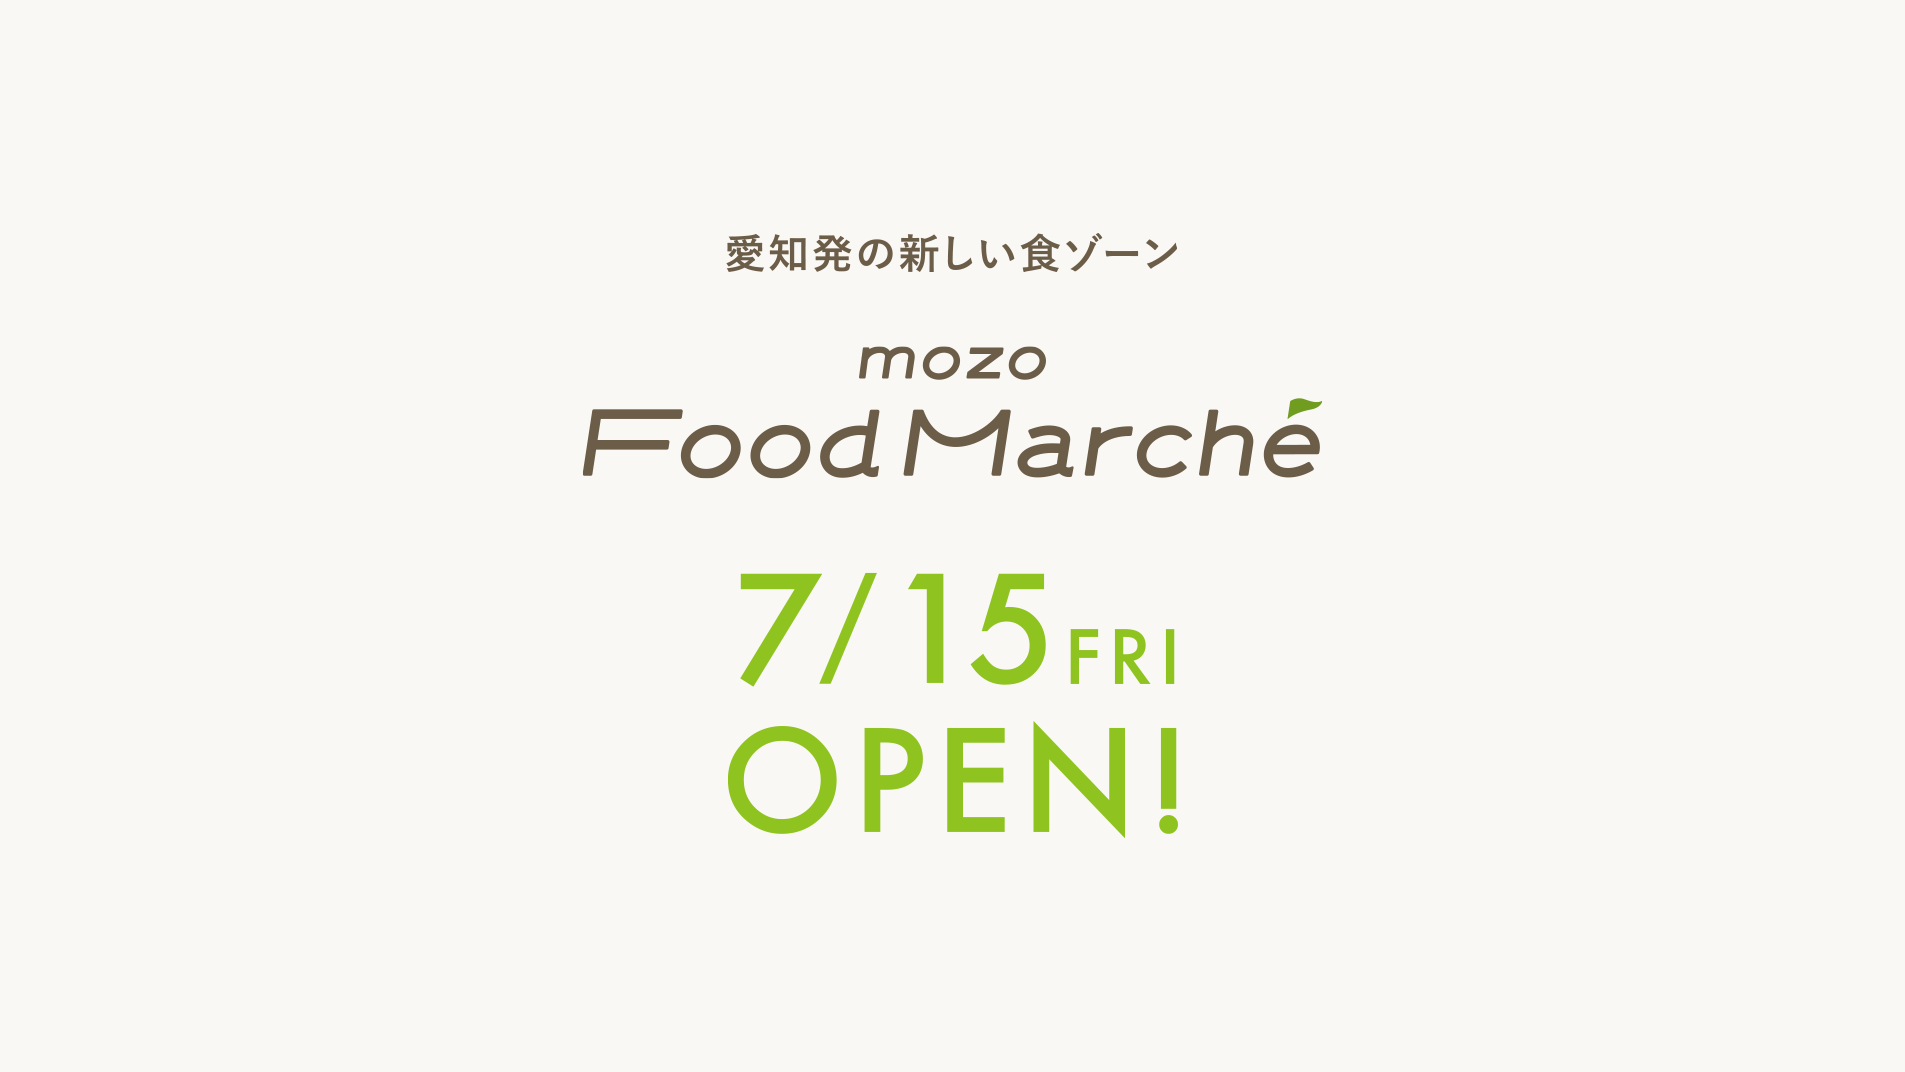 愛知発の新しい食ゾーン mozo Food Marche 7/15 FRI OPEN!